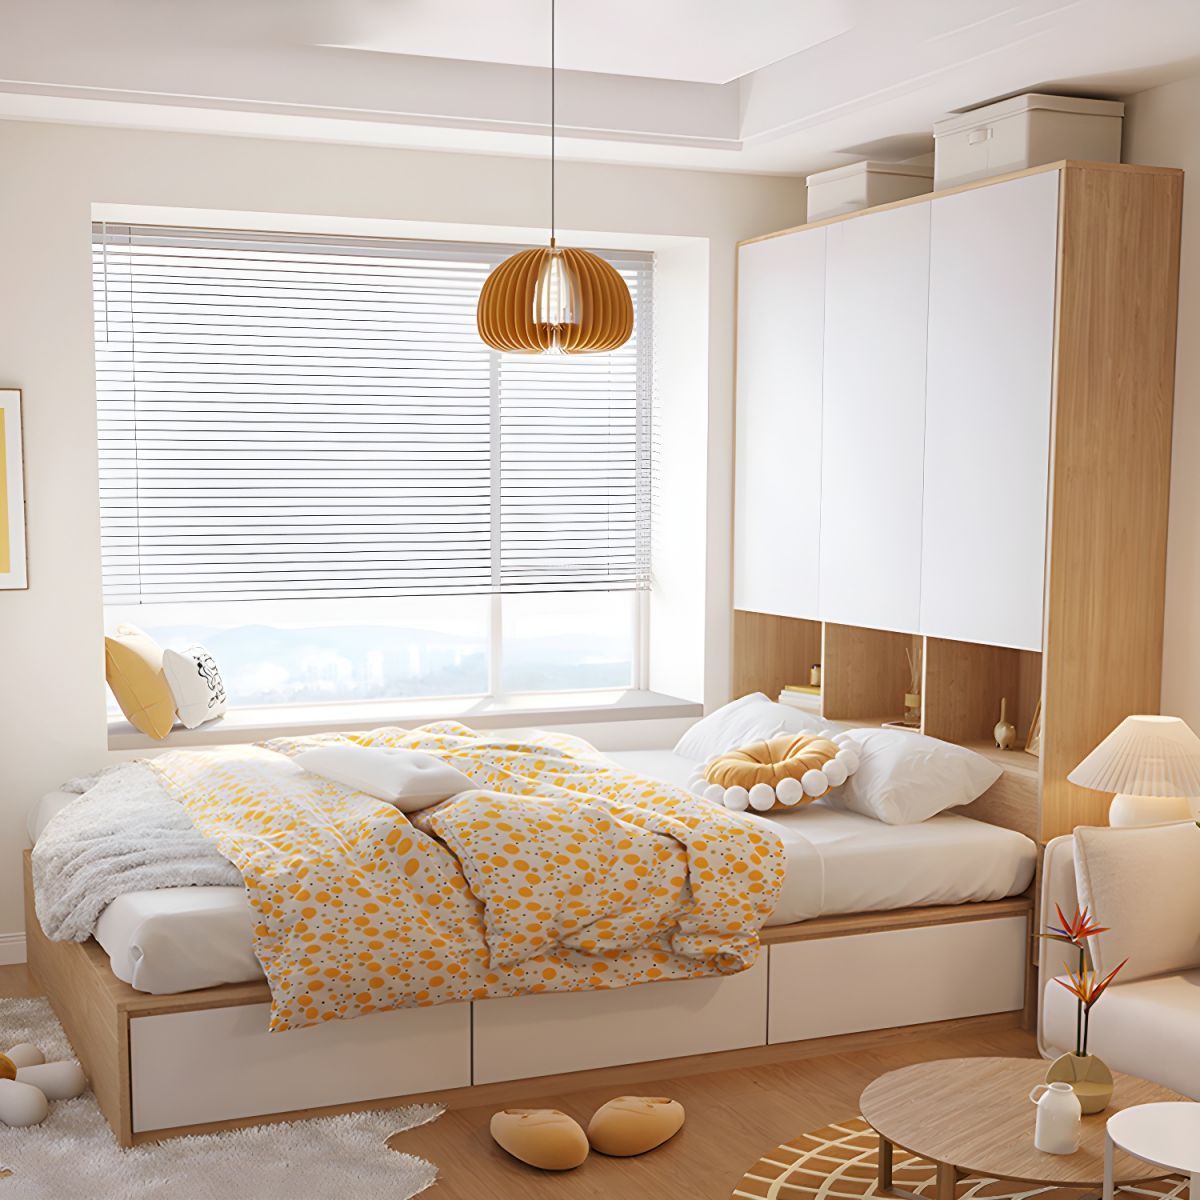 Giường ngủ gỗ công nghiệp tích hợp tủ thông minh